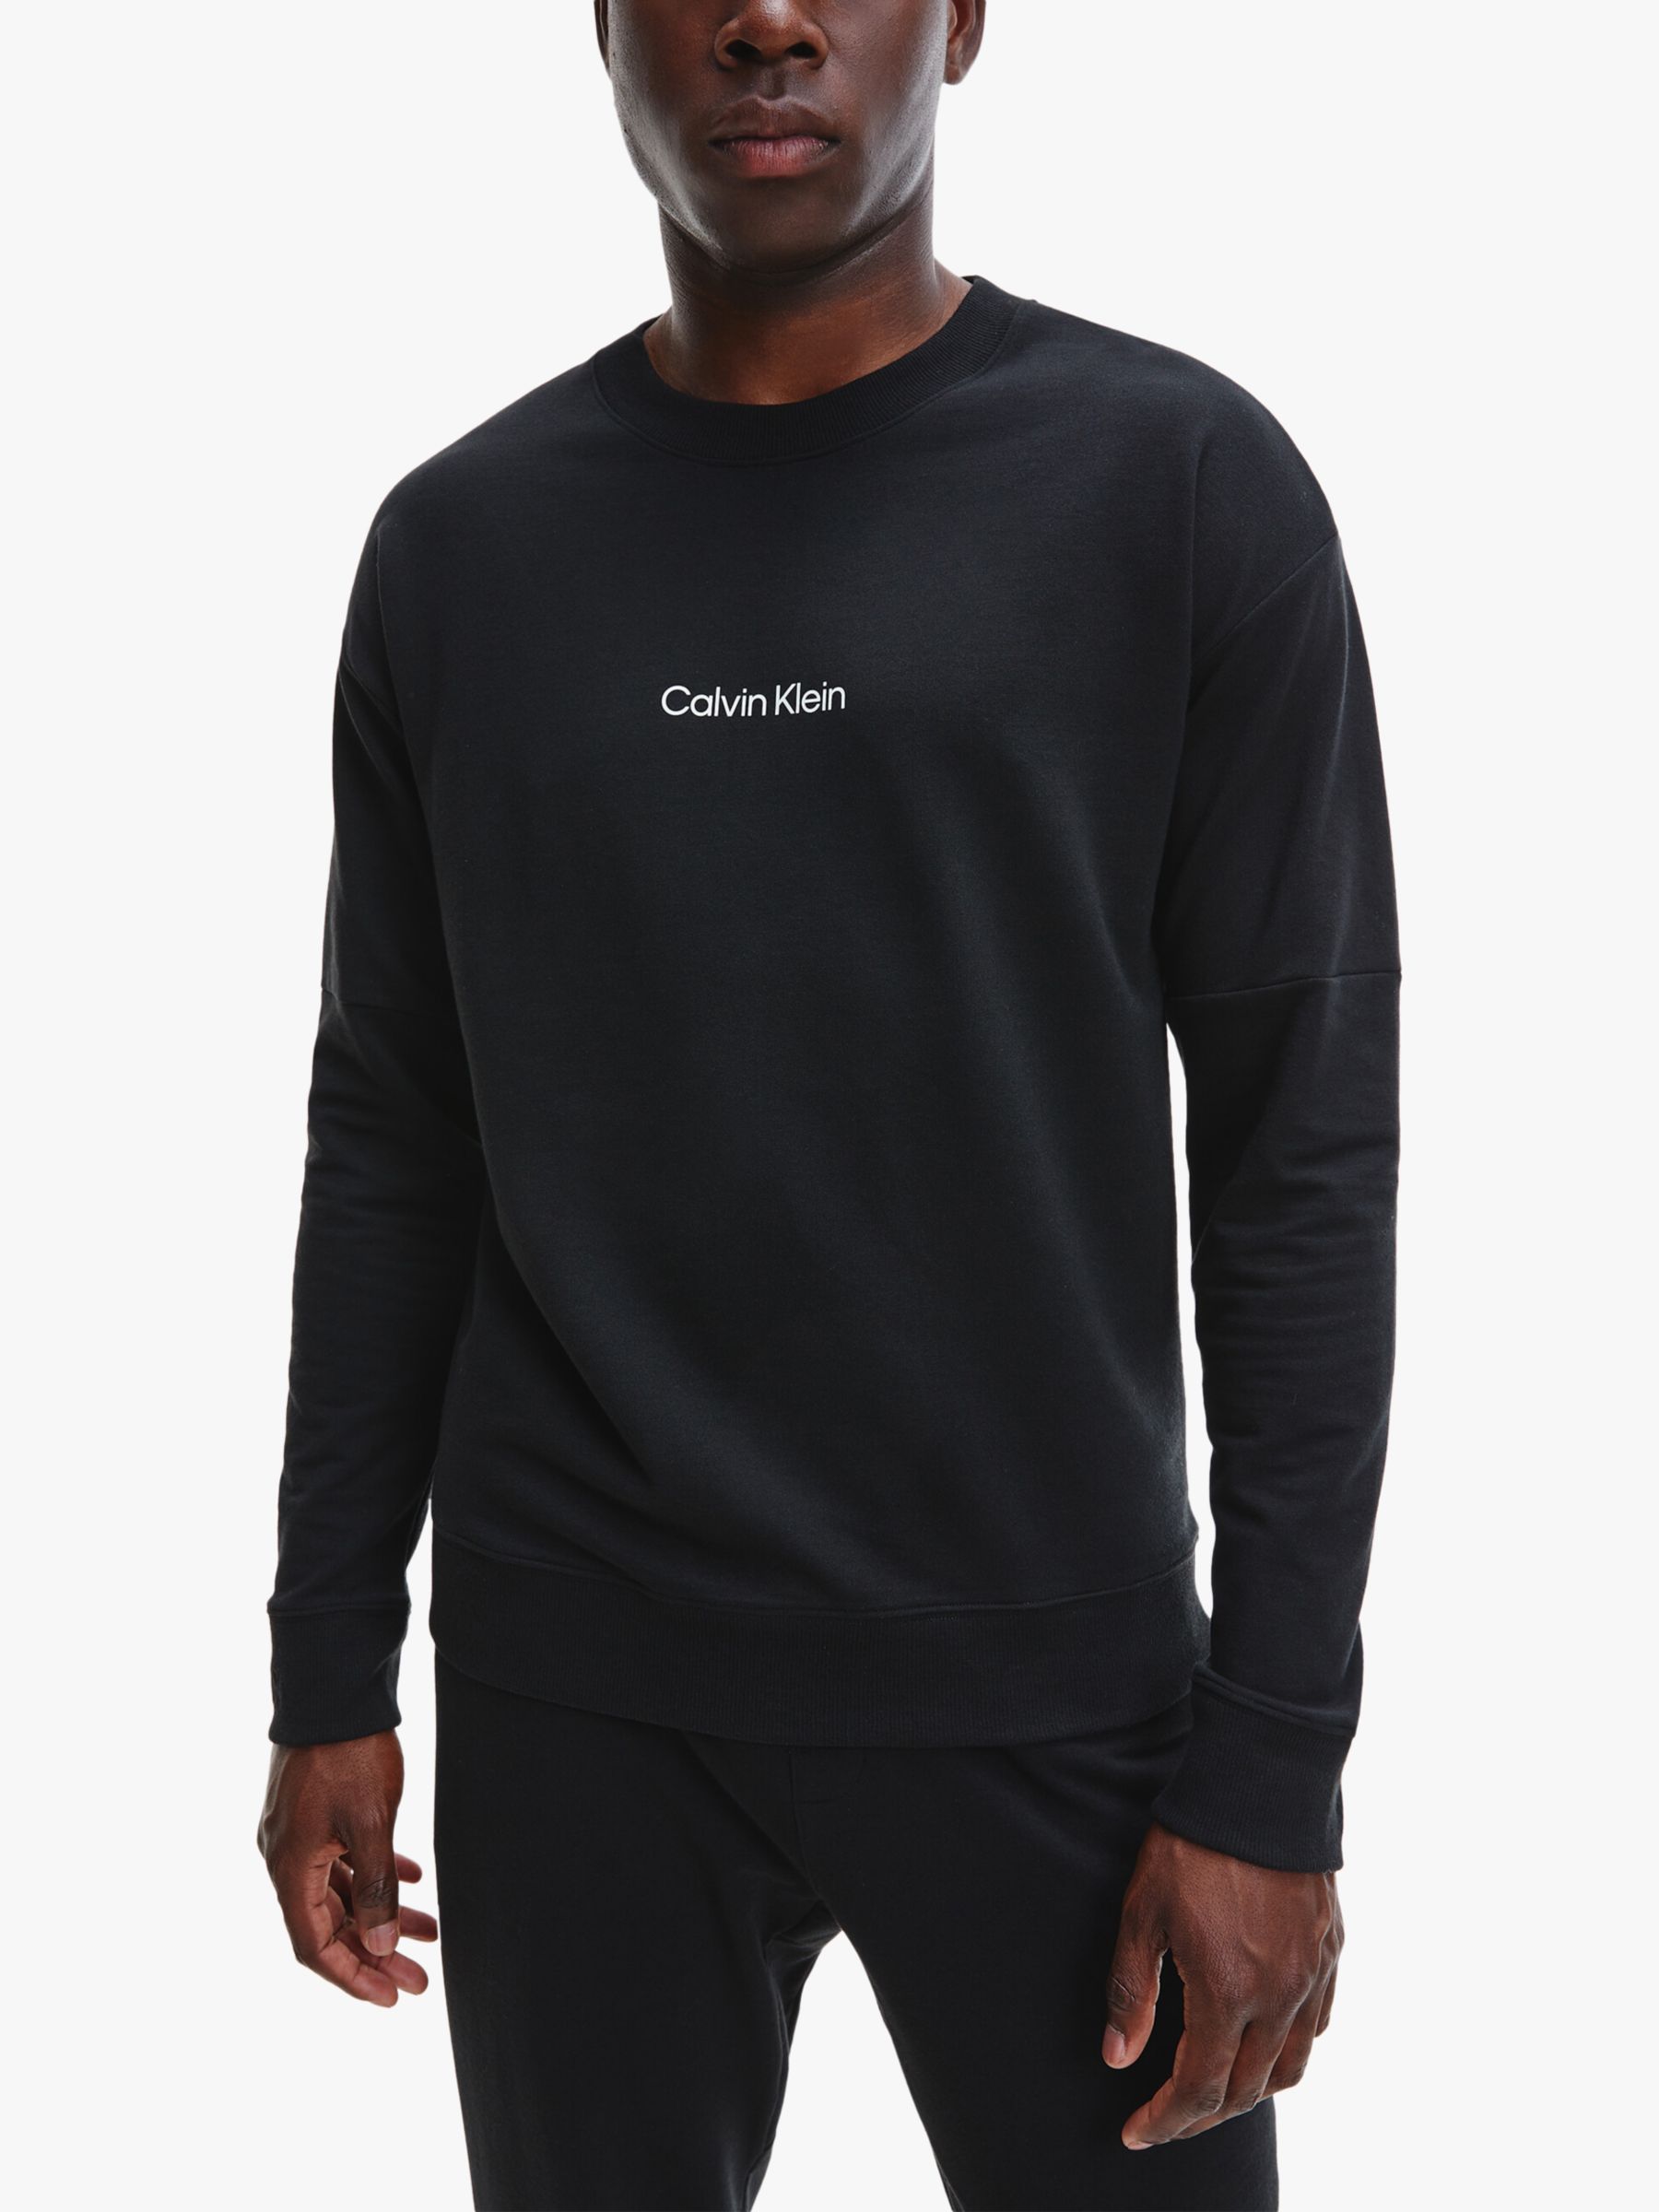 Calvin Klein Logo Sweatshirt, Black at John Lewis & Partners